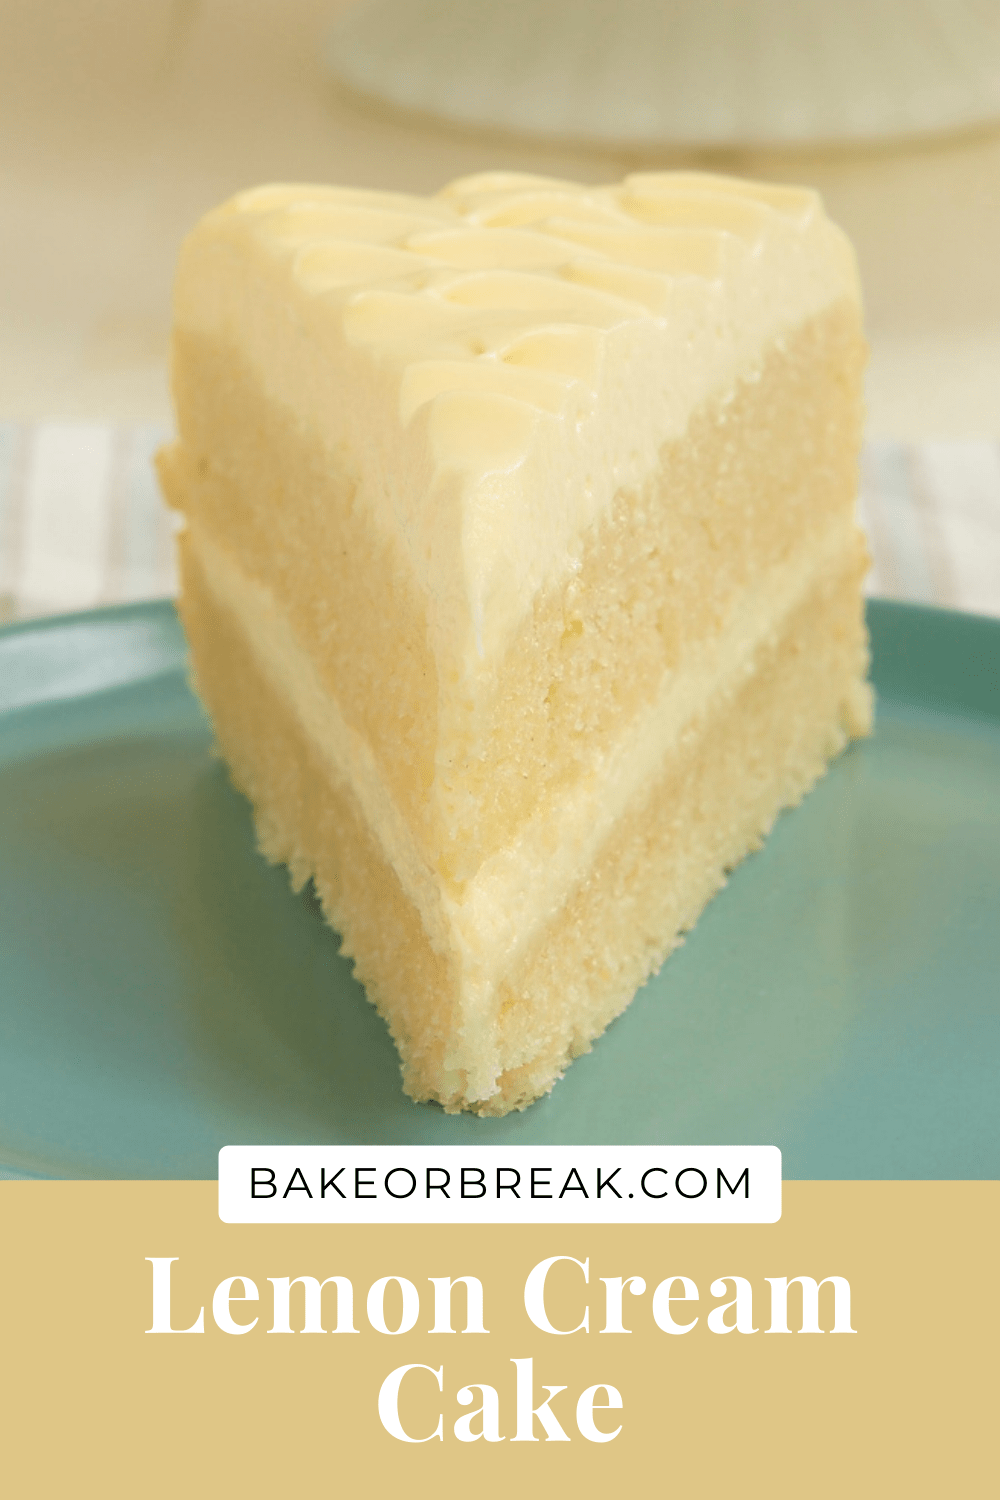 Lemon Cream Cake bakeorbreak.com